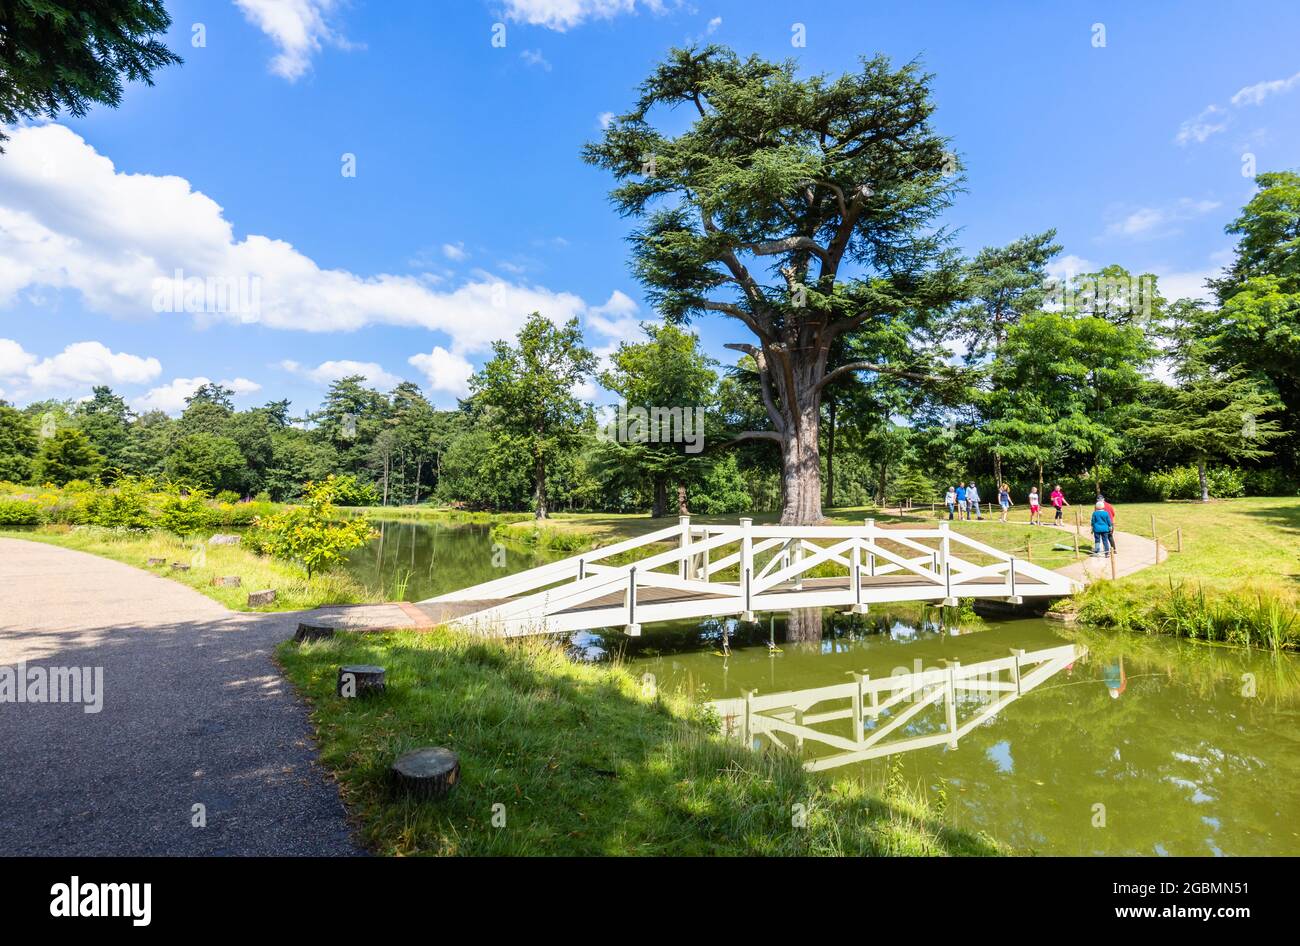 Reconstrucción del puente Wollett de madera blanca en los paisajes de Hamilton de Painthill Park, jardines paisajísticos en Cobham, Surrey, sudeste de Inglaterra, Reino Unido Foto de stock